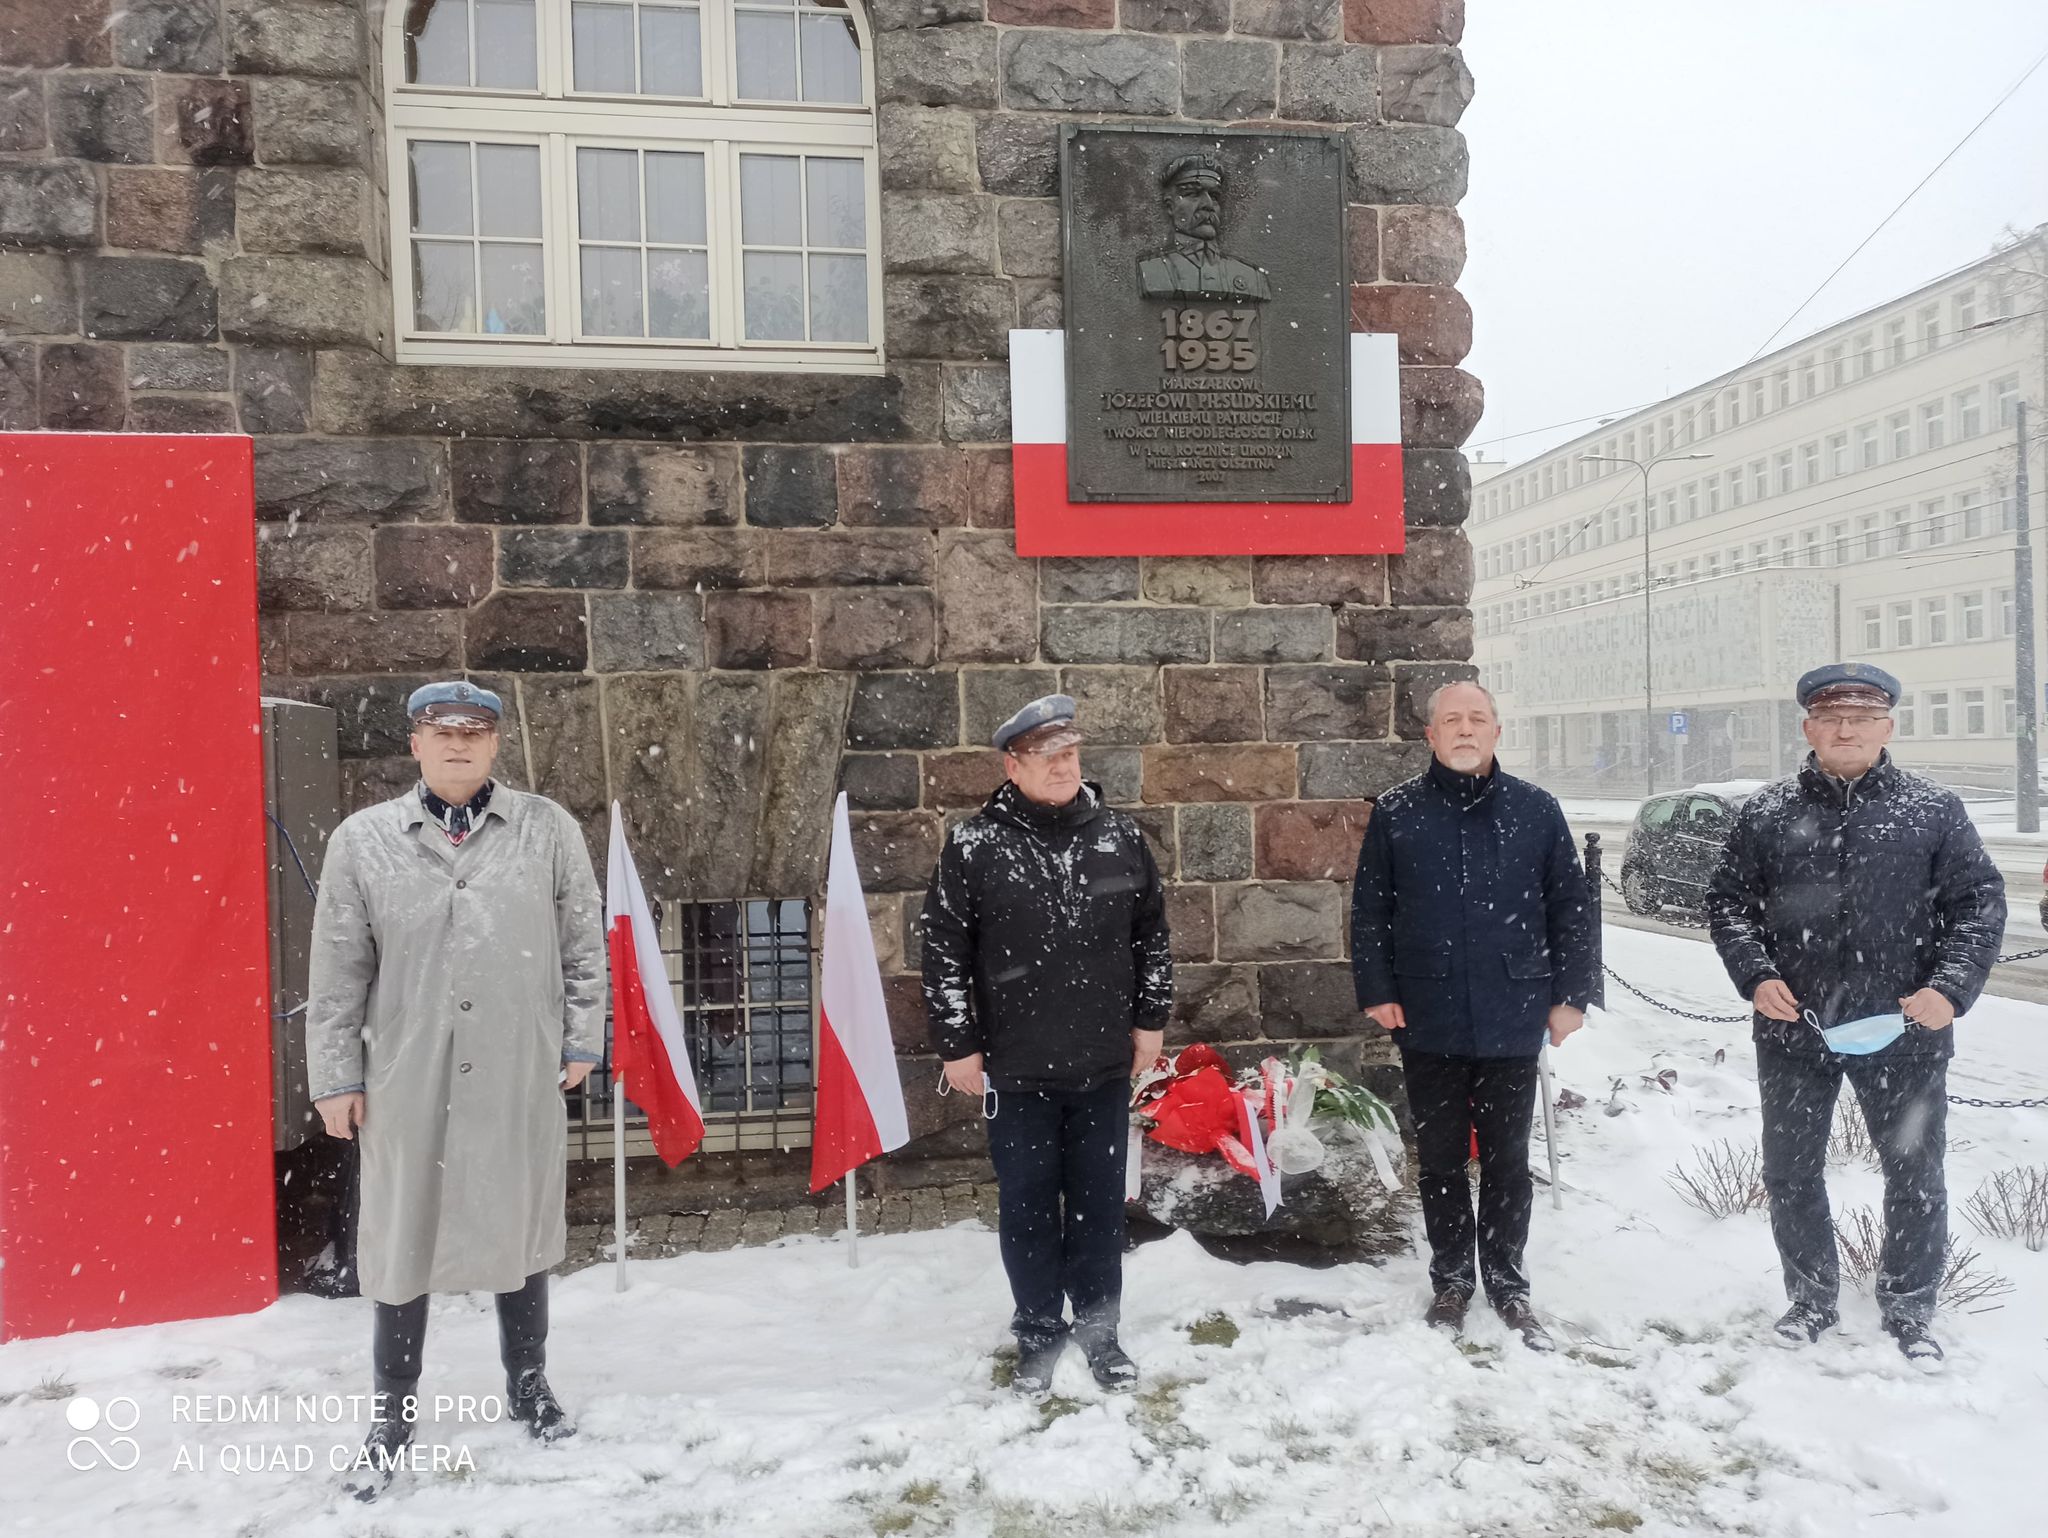 Apel o wsparcie rekonstrukcji chaty Piłsudskiego Szczytno, Wiadomości, zShowcase